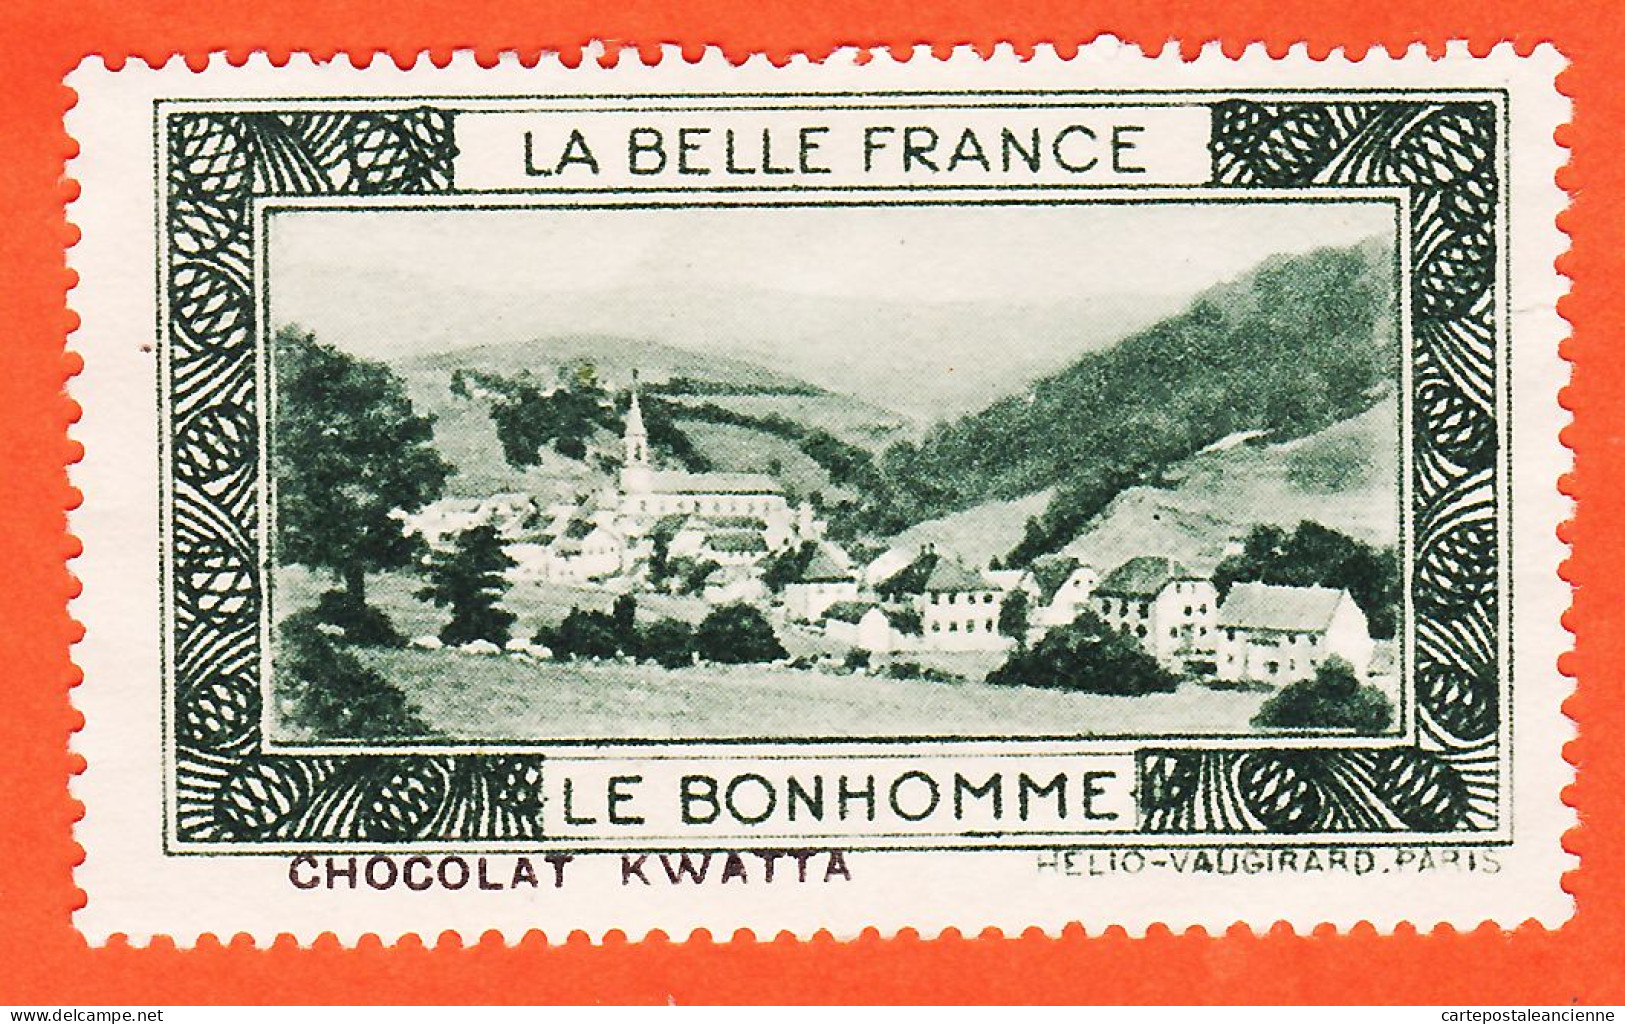 00162 ● (2) LE BONHOMME 68-Haut Rhin Pub Chocolat KWATTA Vignette Collection BELLE FRANCE HELIO-VAUGIRARD Erinnophilie - Turismo (Viñetas)